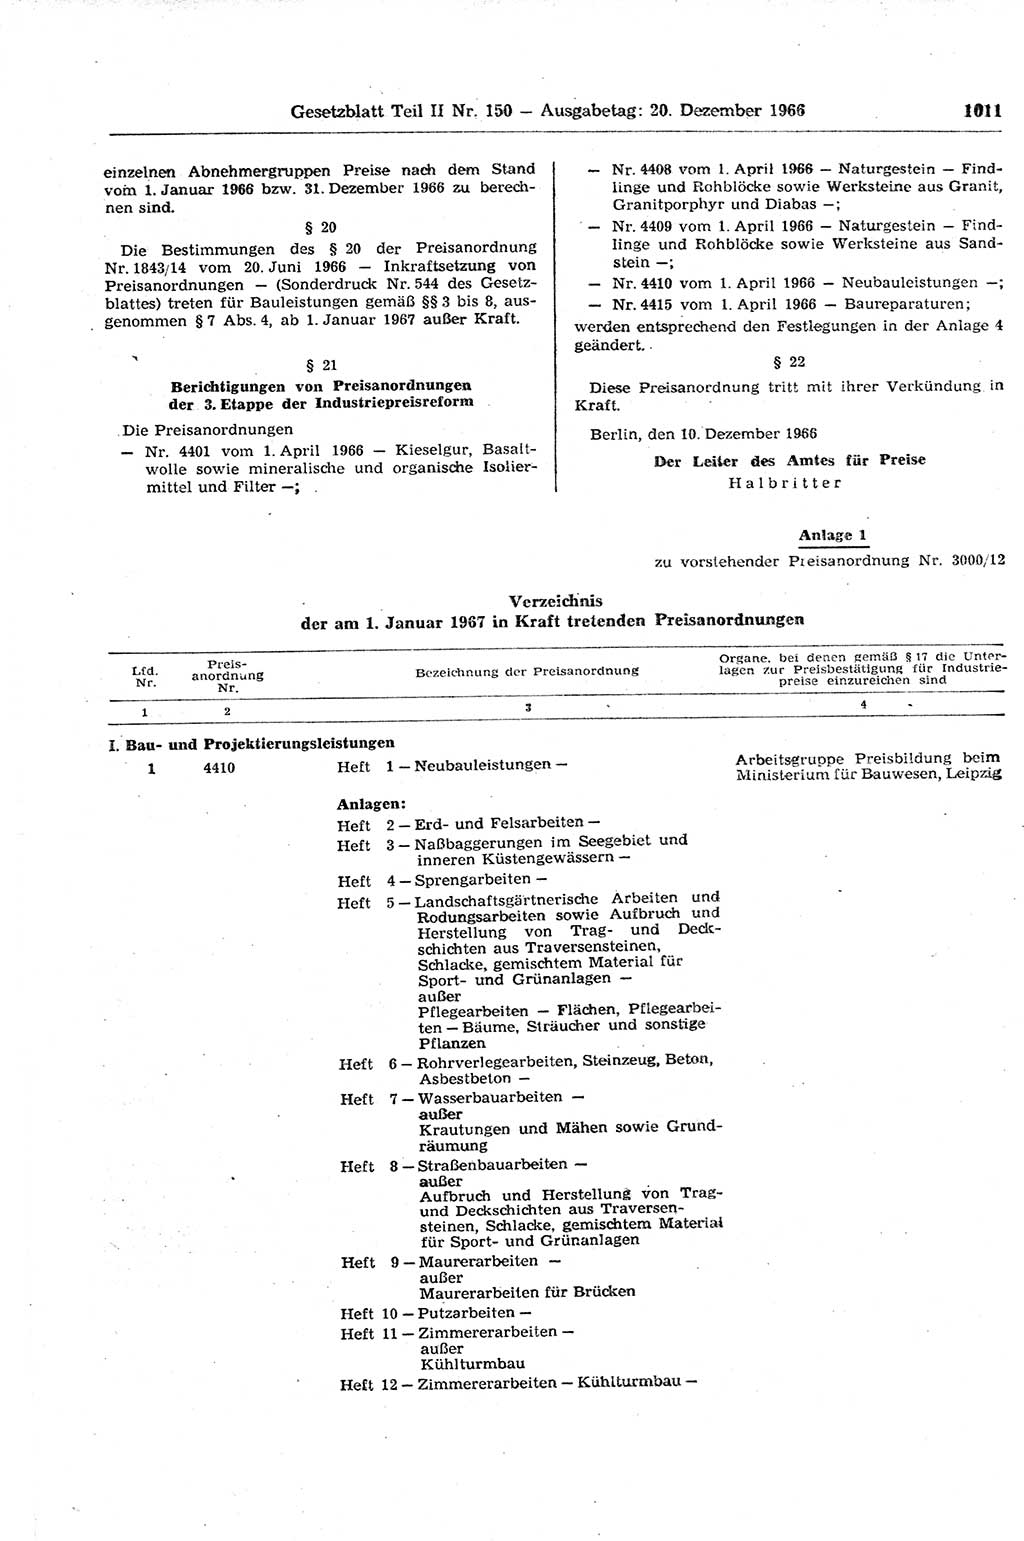 Gesetzblatt (GBl.) der Deutschen Demokratischen Republik (DDR) Teil ⅠⅠ 1966, Seite 1011 (GBl. DDR ⅠⅠ 1966, S. 1011)